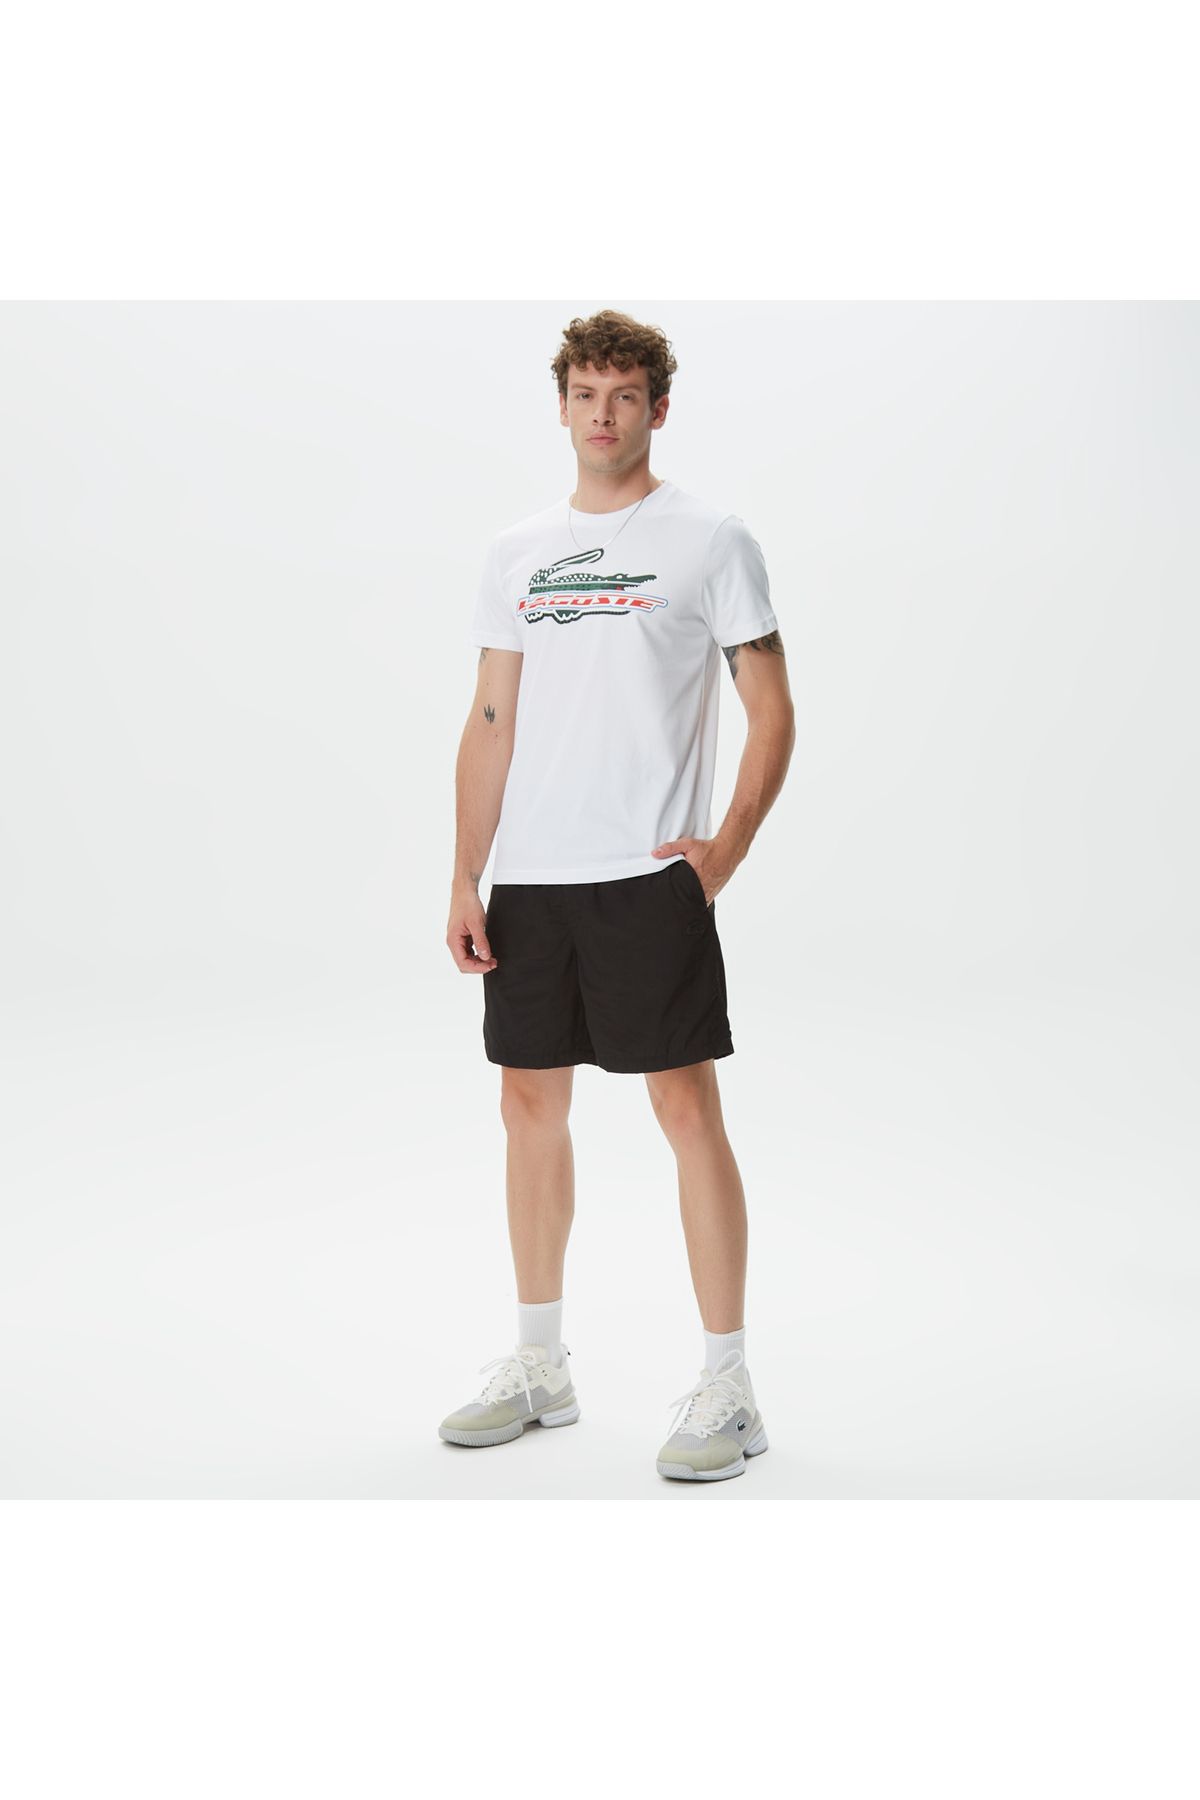 Lacoste ورزش مردان به طور منظم و مناسب پنبه ارگانیک چاپ شده تی شرت سفید